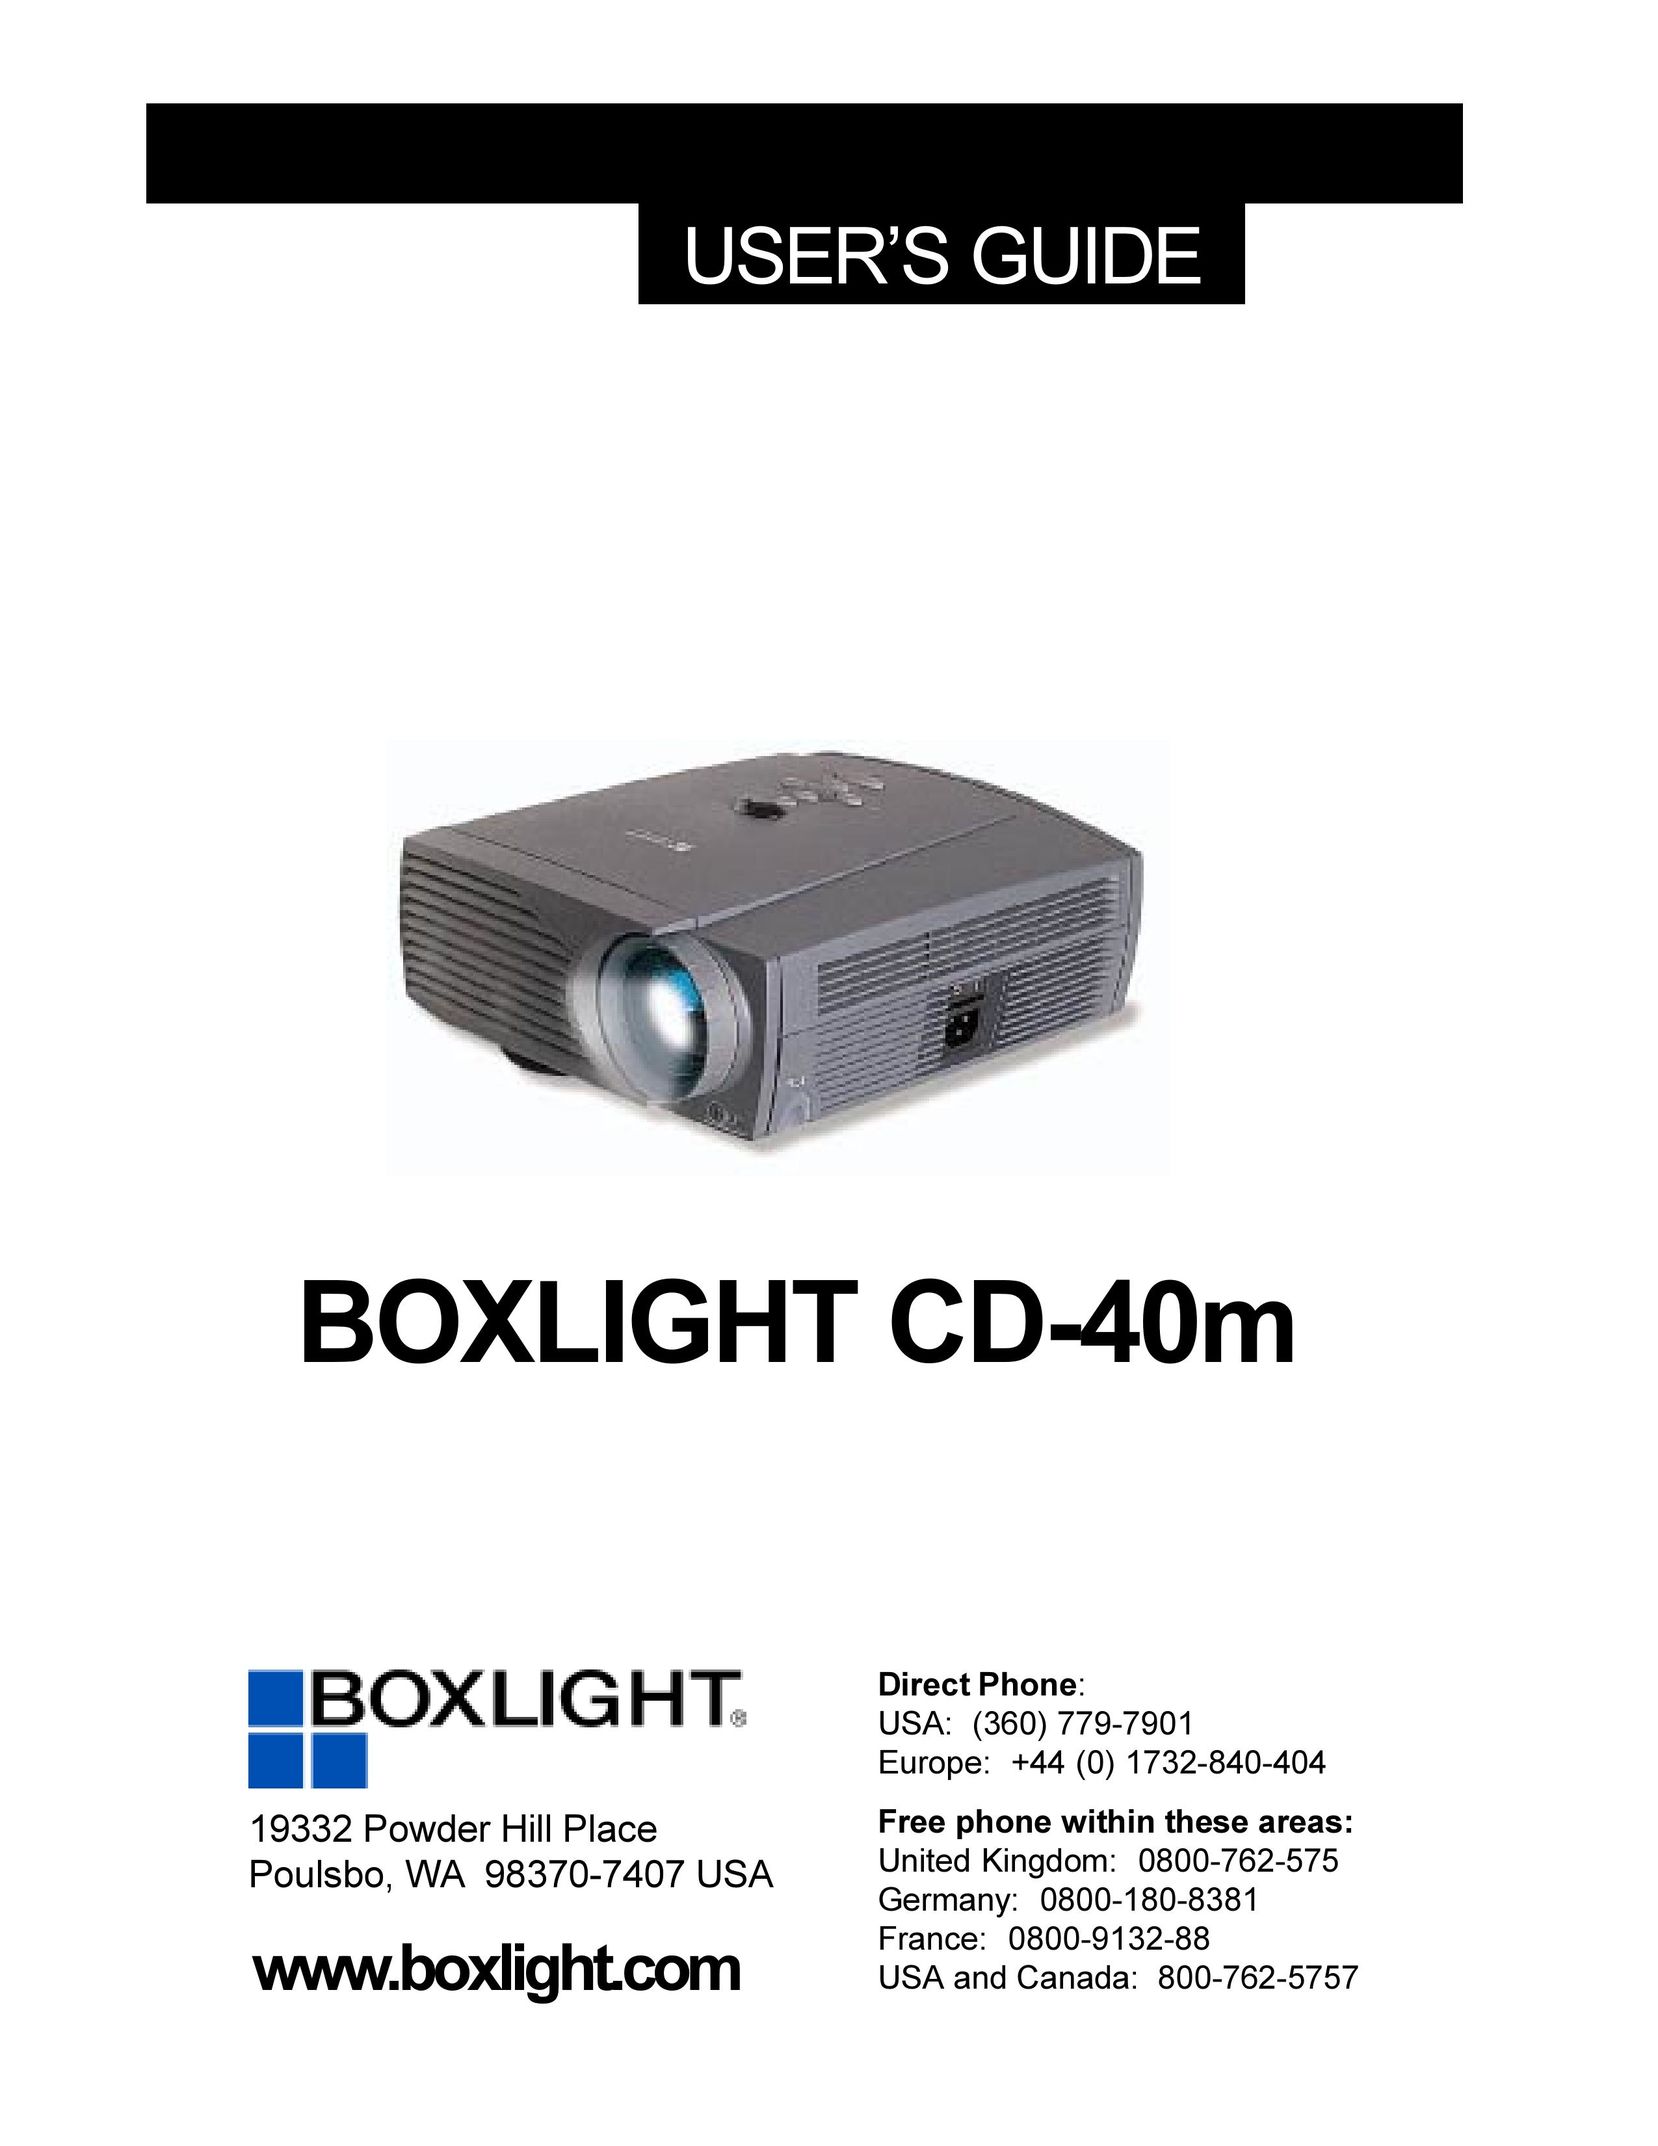 BOXLIGHT CD-40m Projector User Manual